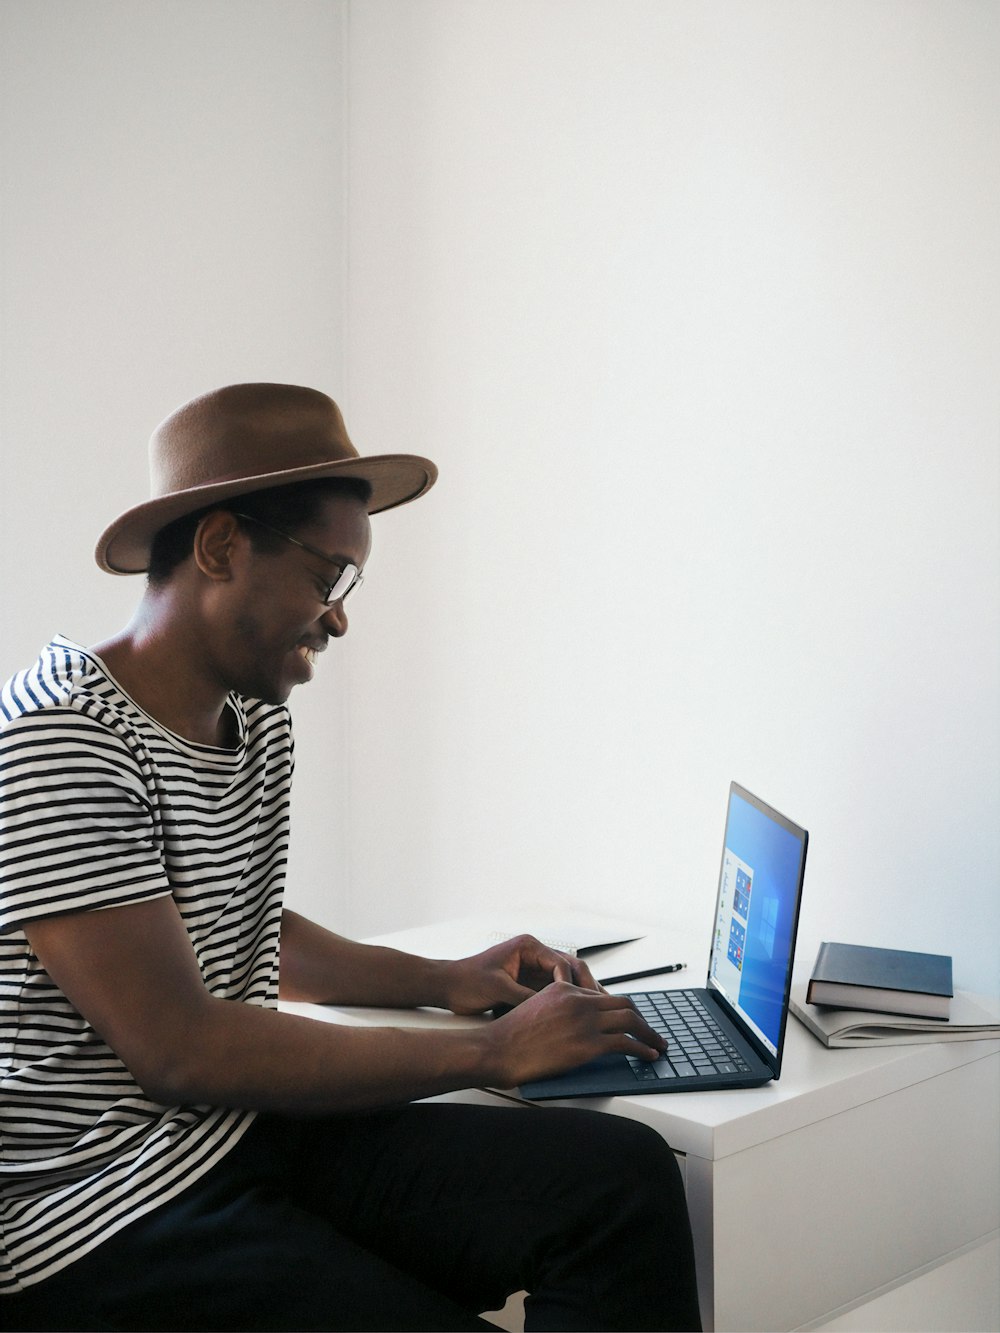 Uomo in camicia a righe bianche e nere usando il computer portatile blu cobalto di Microsoft Surface